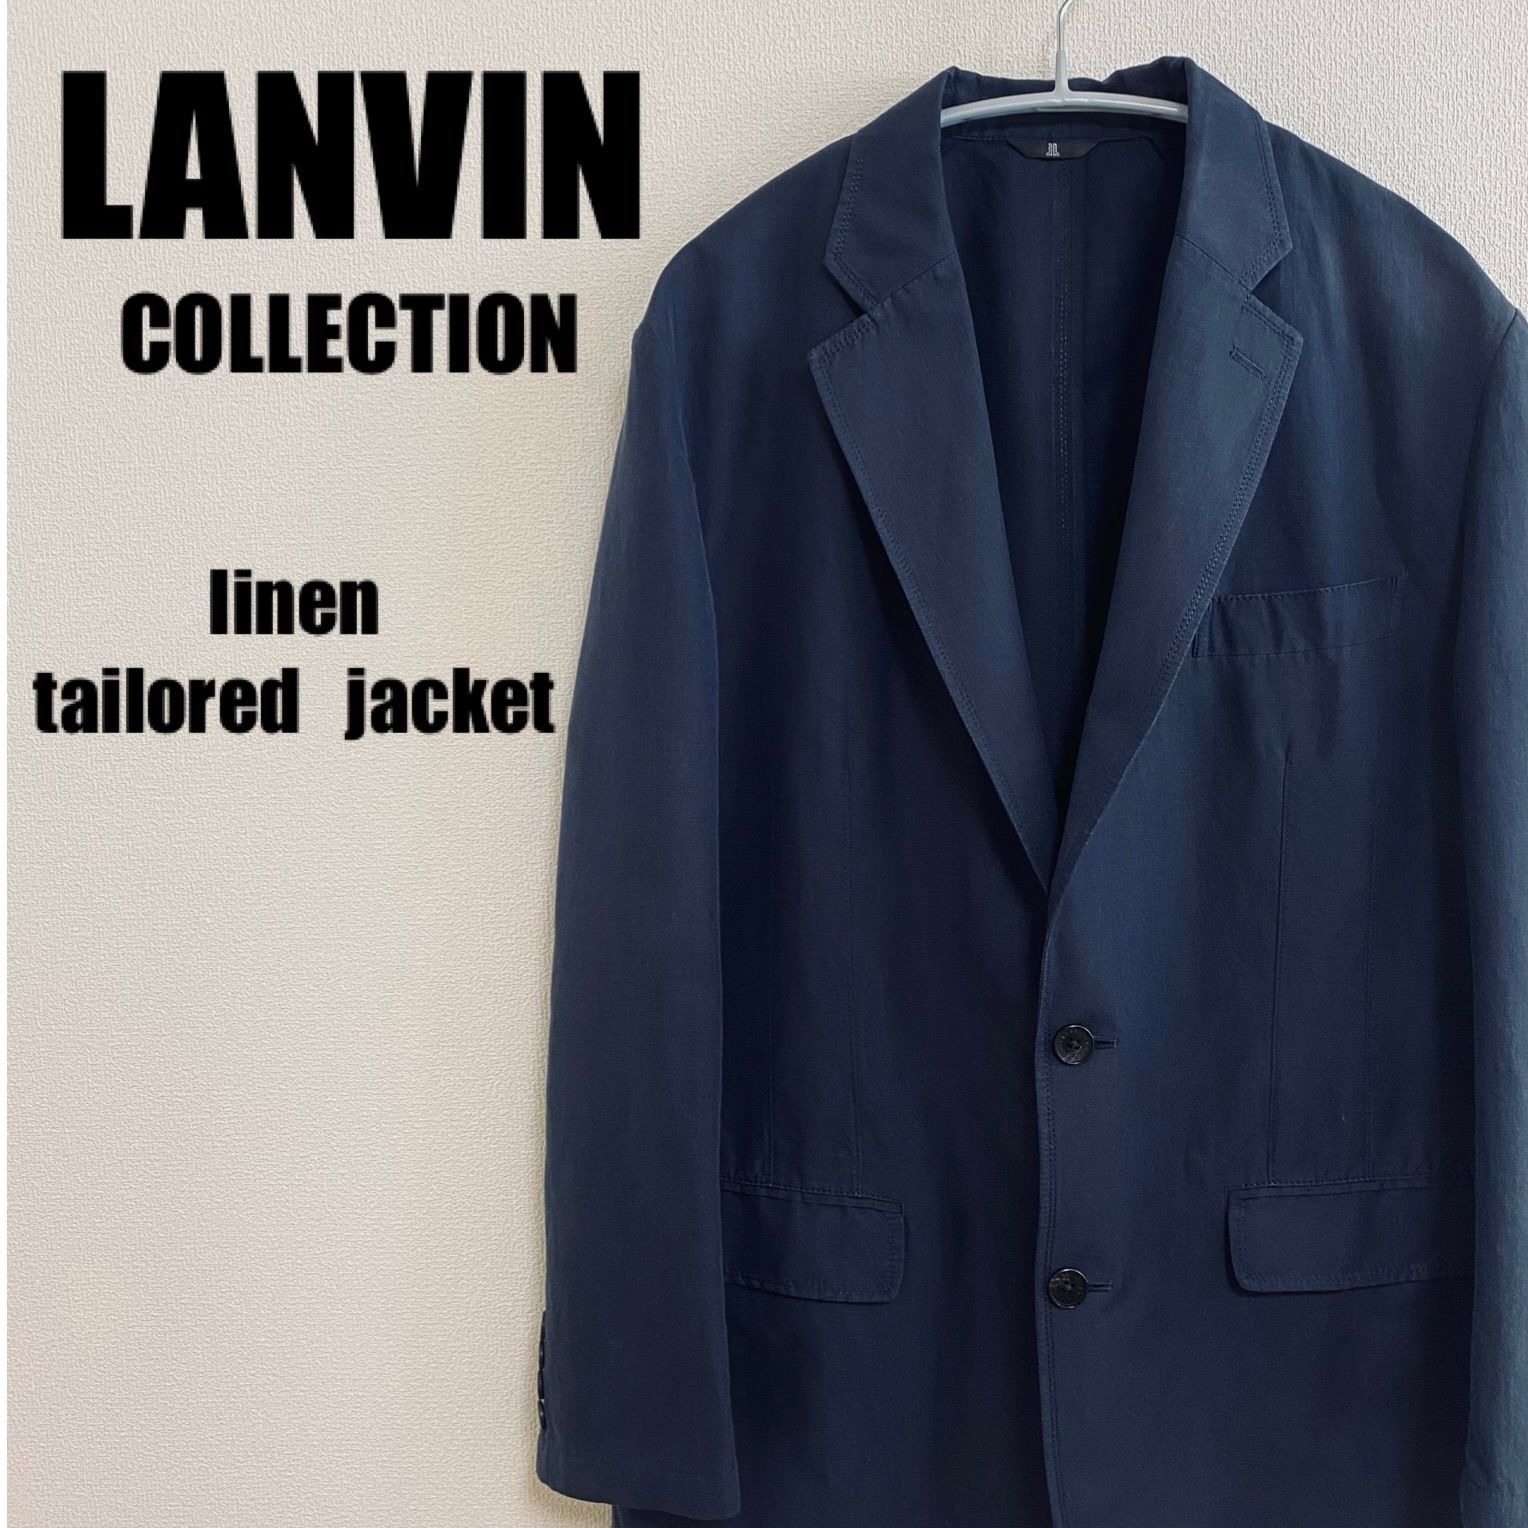 LANVIN COLLECTION テーラードジャケット メンズ